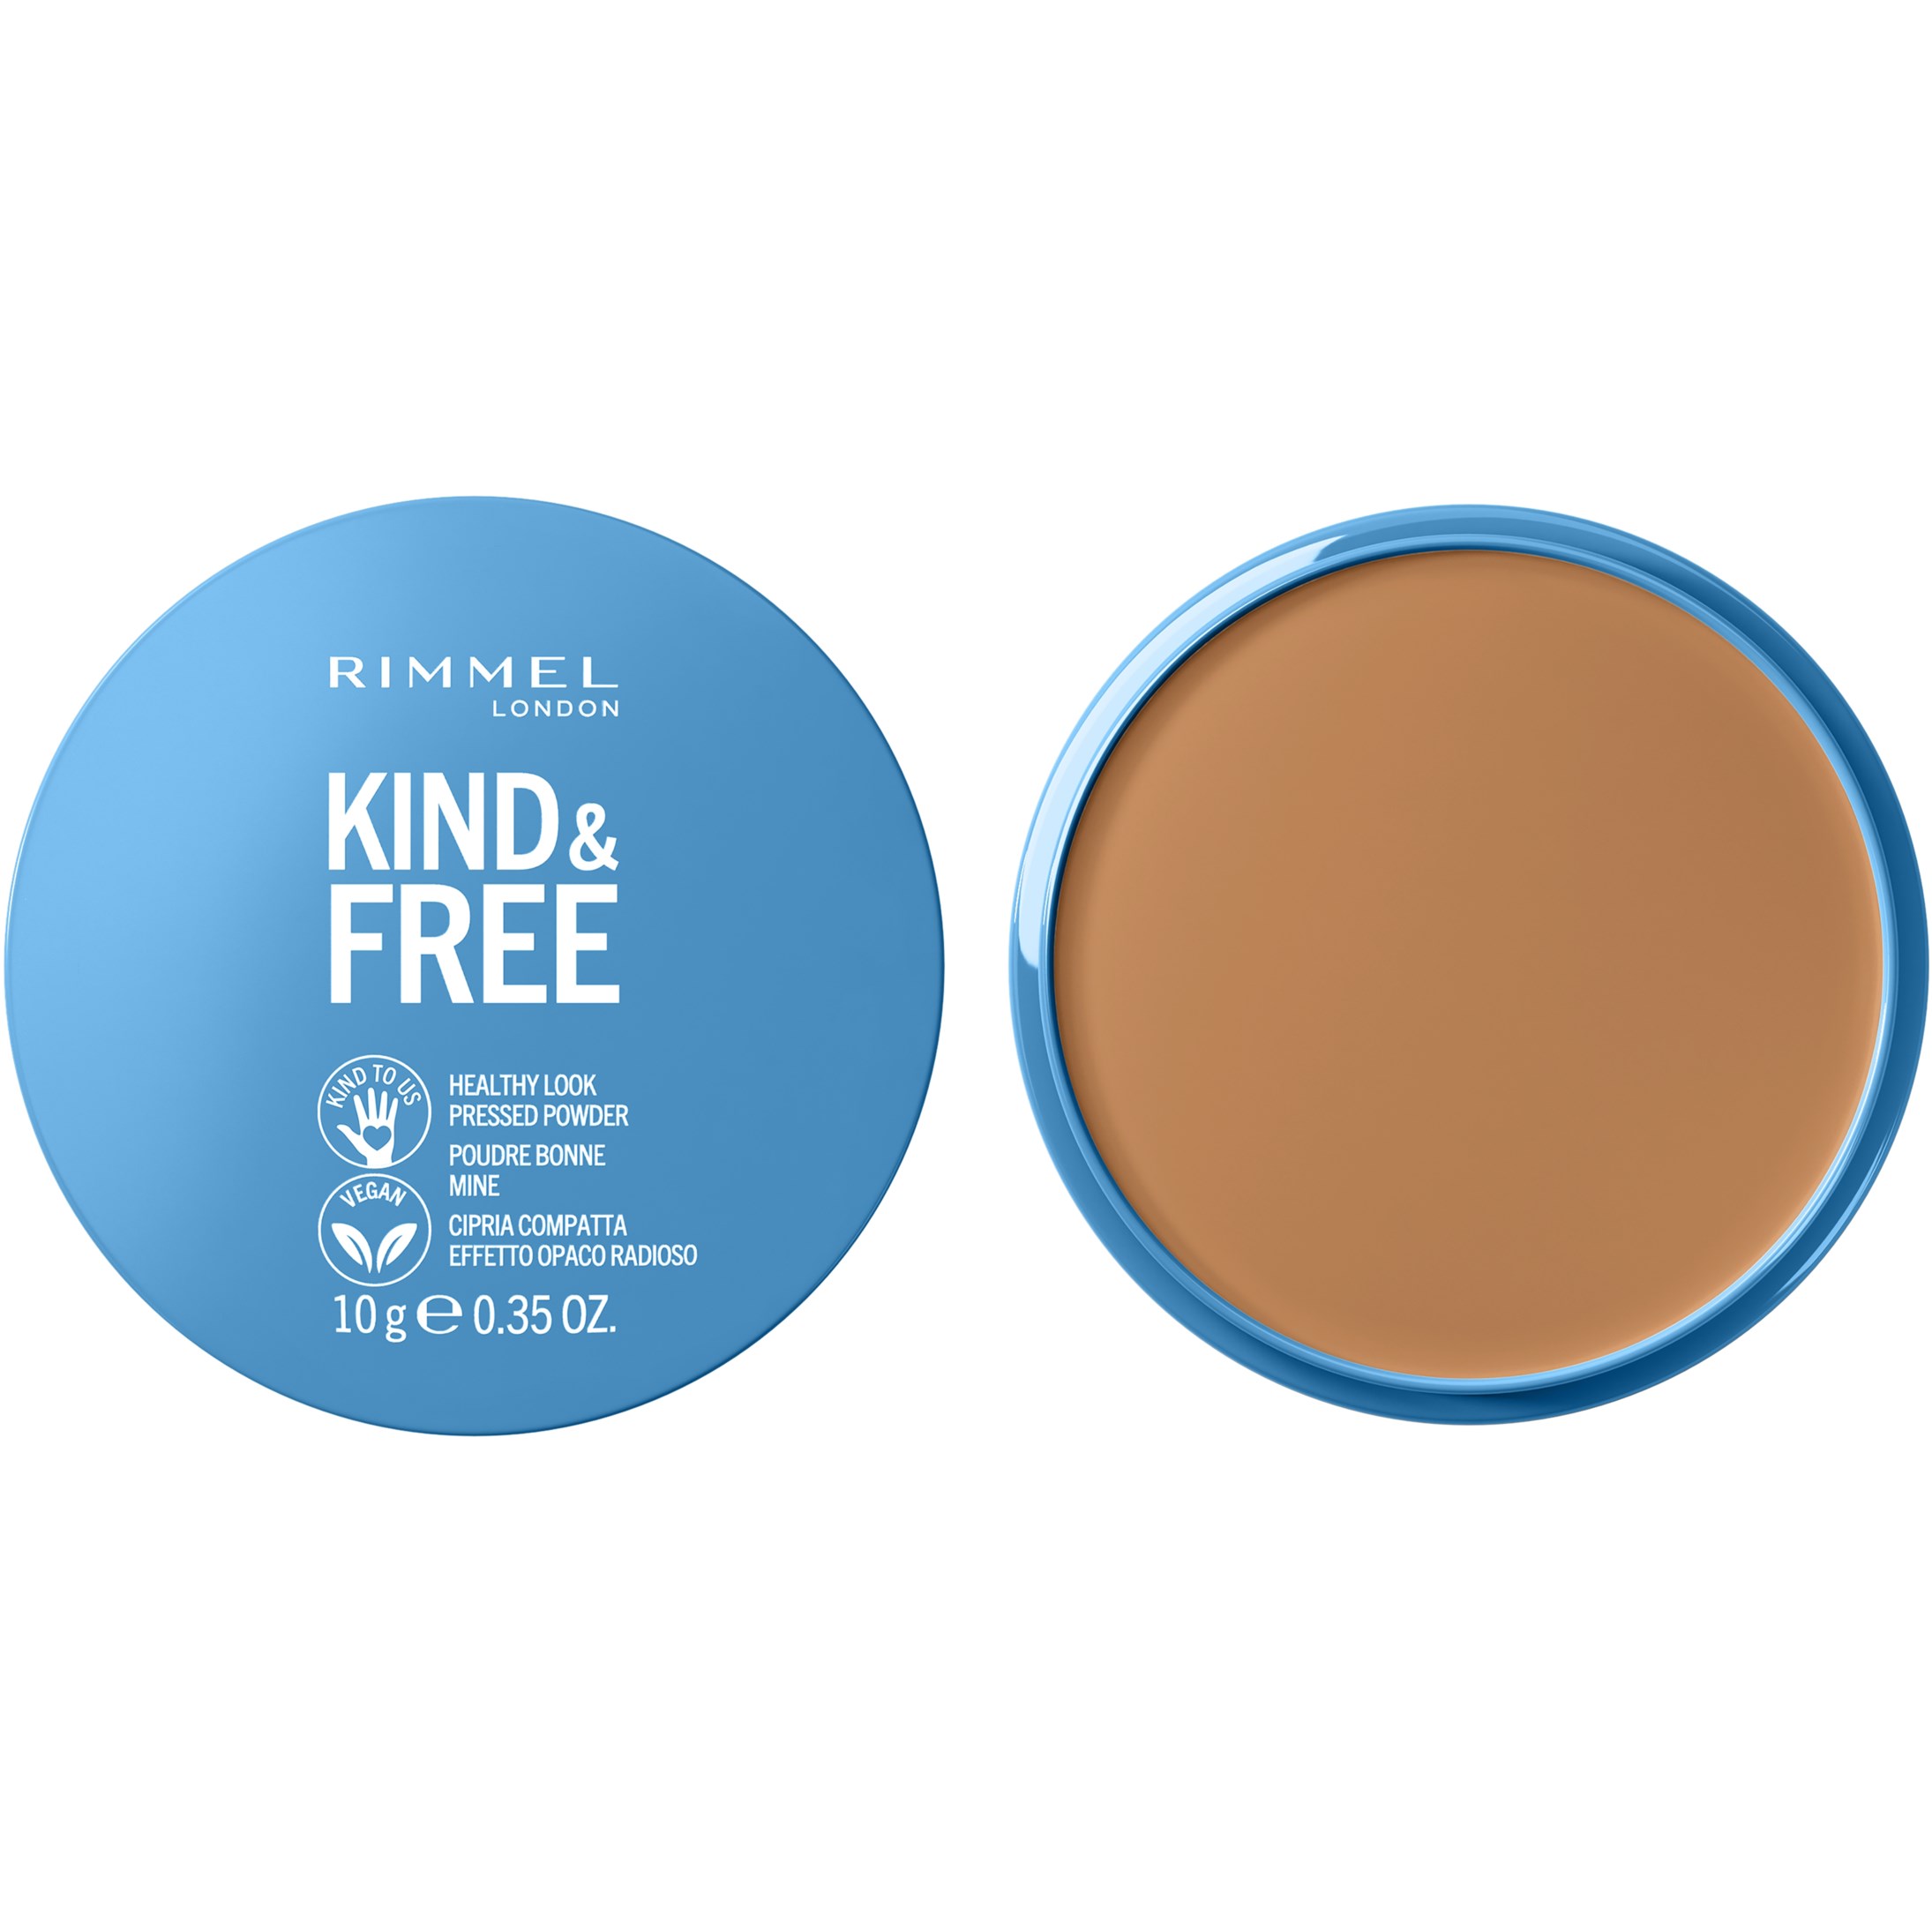 Rimmel Kind &Free pressed powder 40 Tan